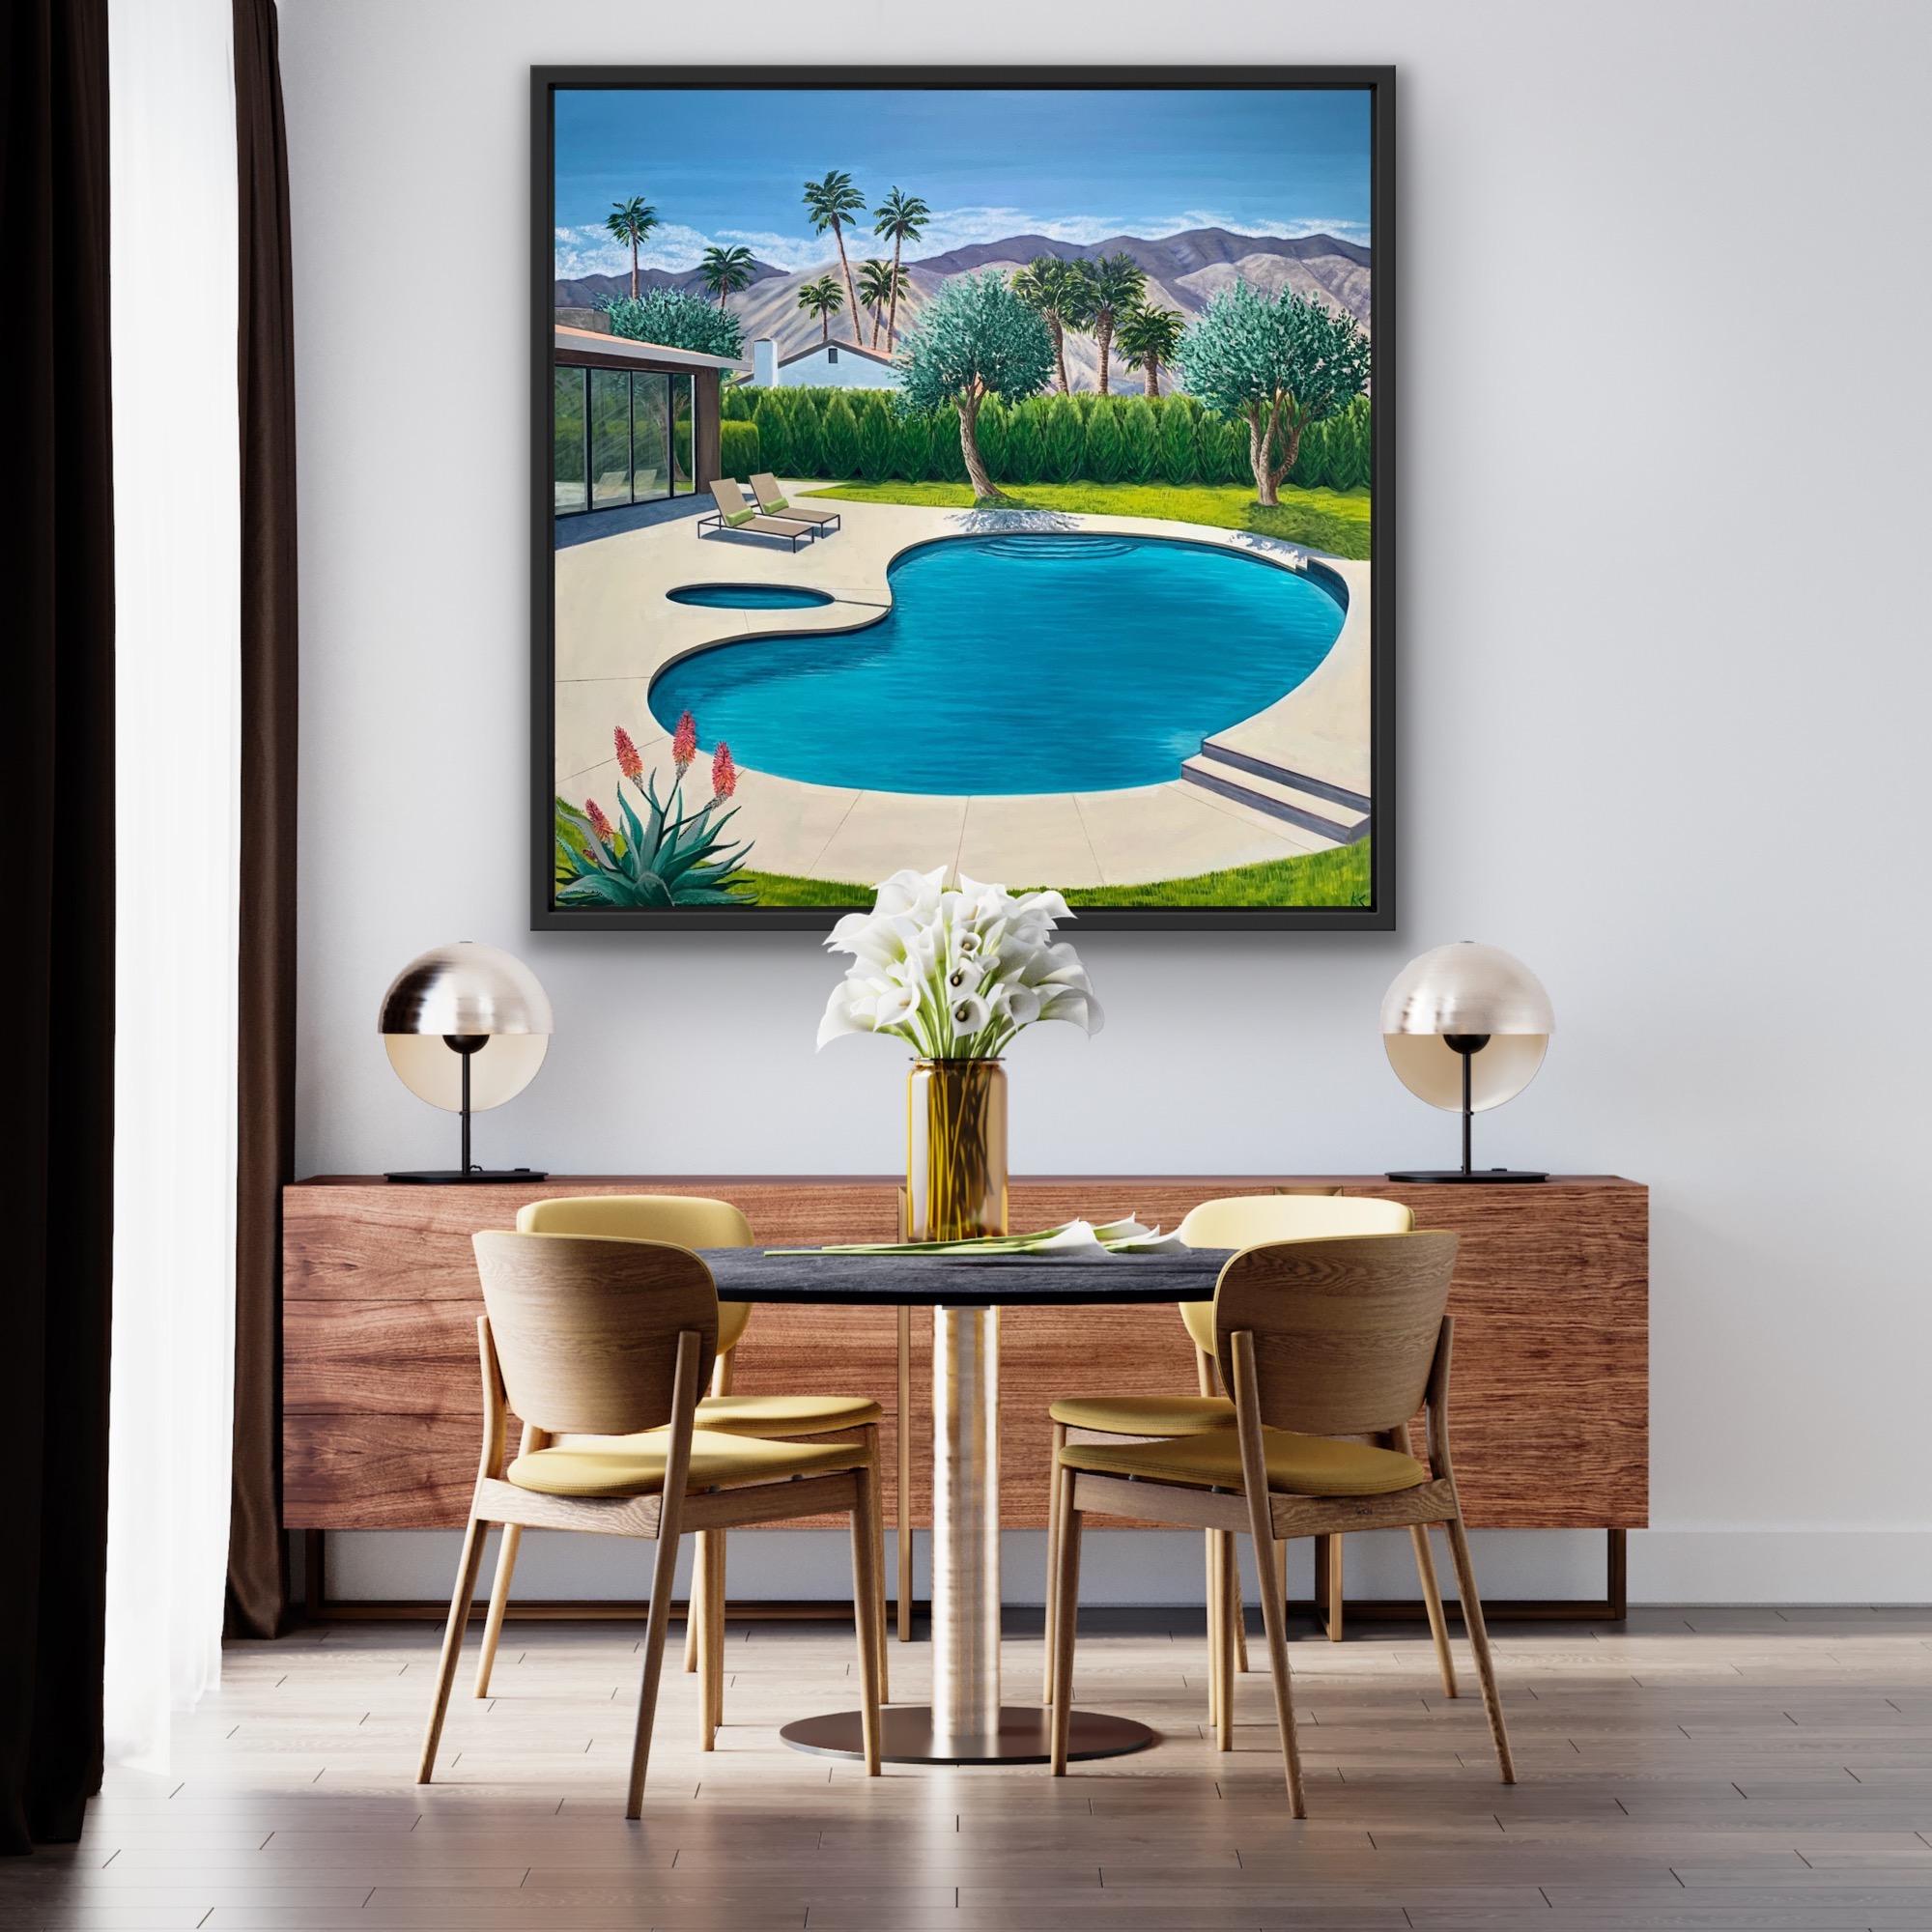 Dies ist ein Gemälde aus meiner modernistischen Pool-Serie von Gemälden. Bei diesem Gemälde gefiel mir die Form des nierenförmigen Pools, und ich platzierte die Olivenbäume, die das architektonisch moderne Haus umgeben, in einer Dreiergruppe. Die